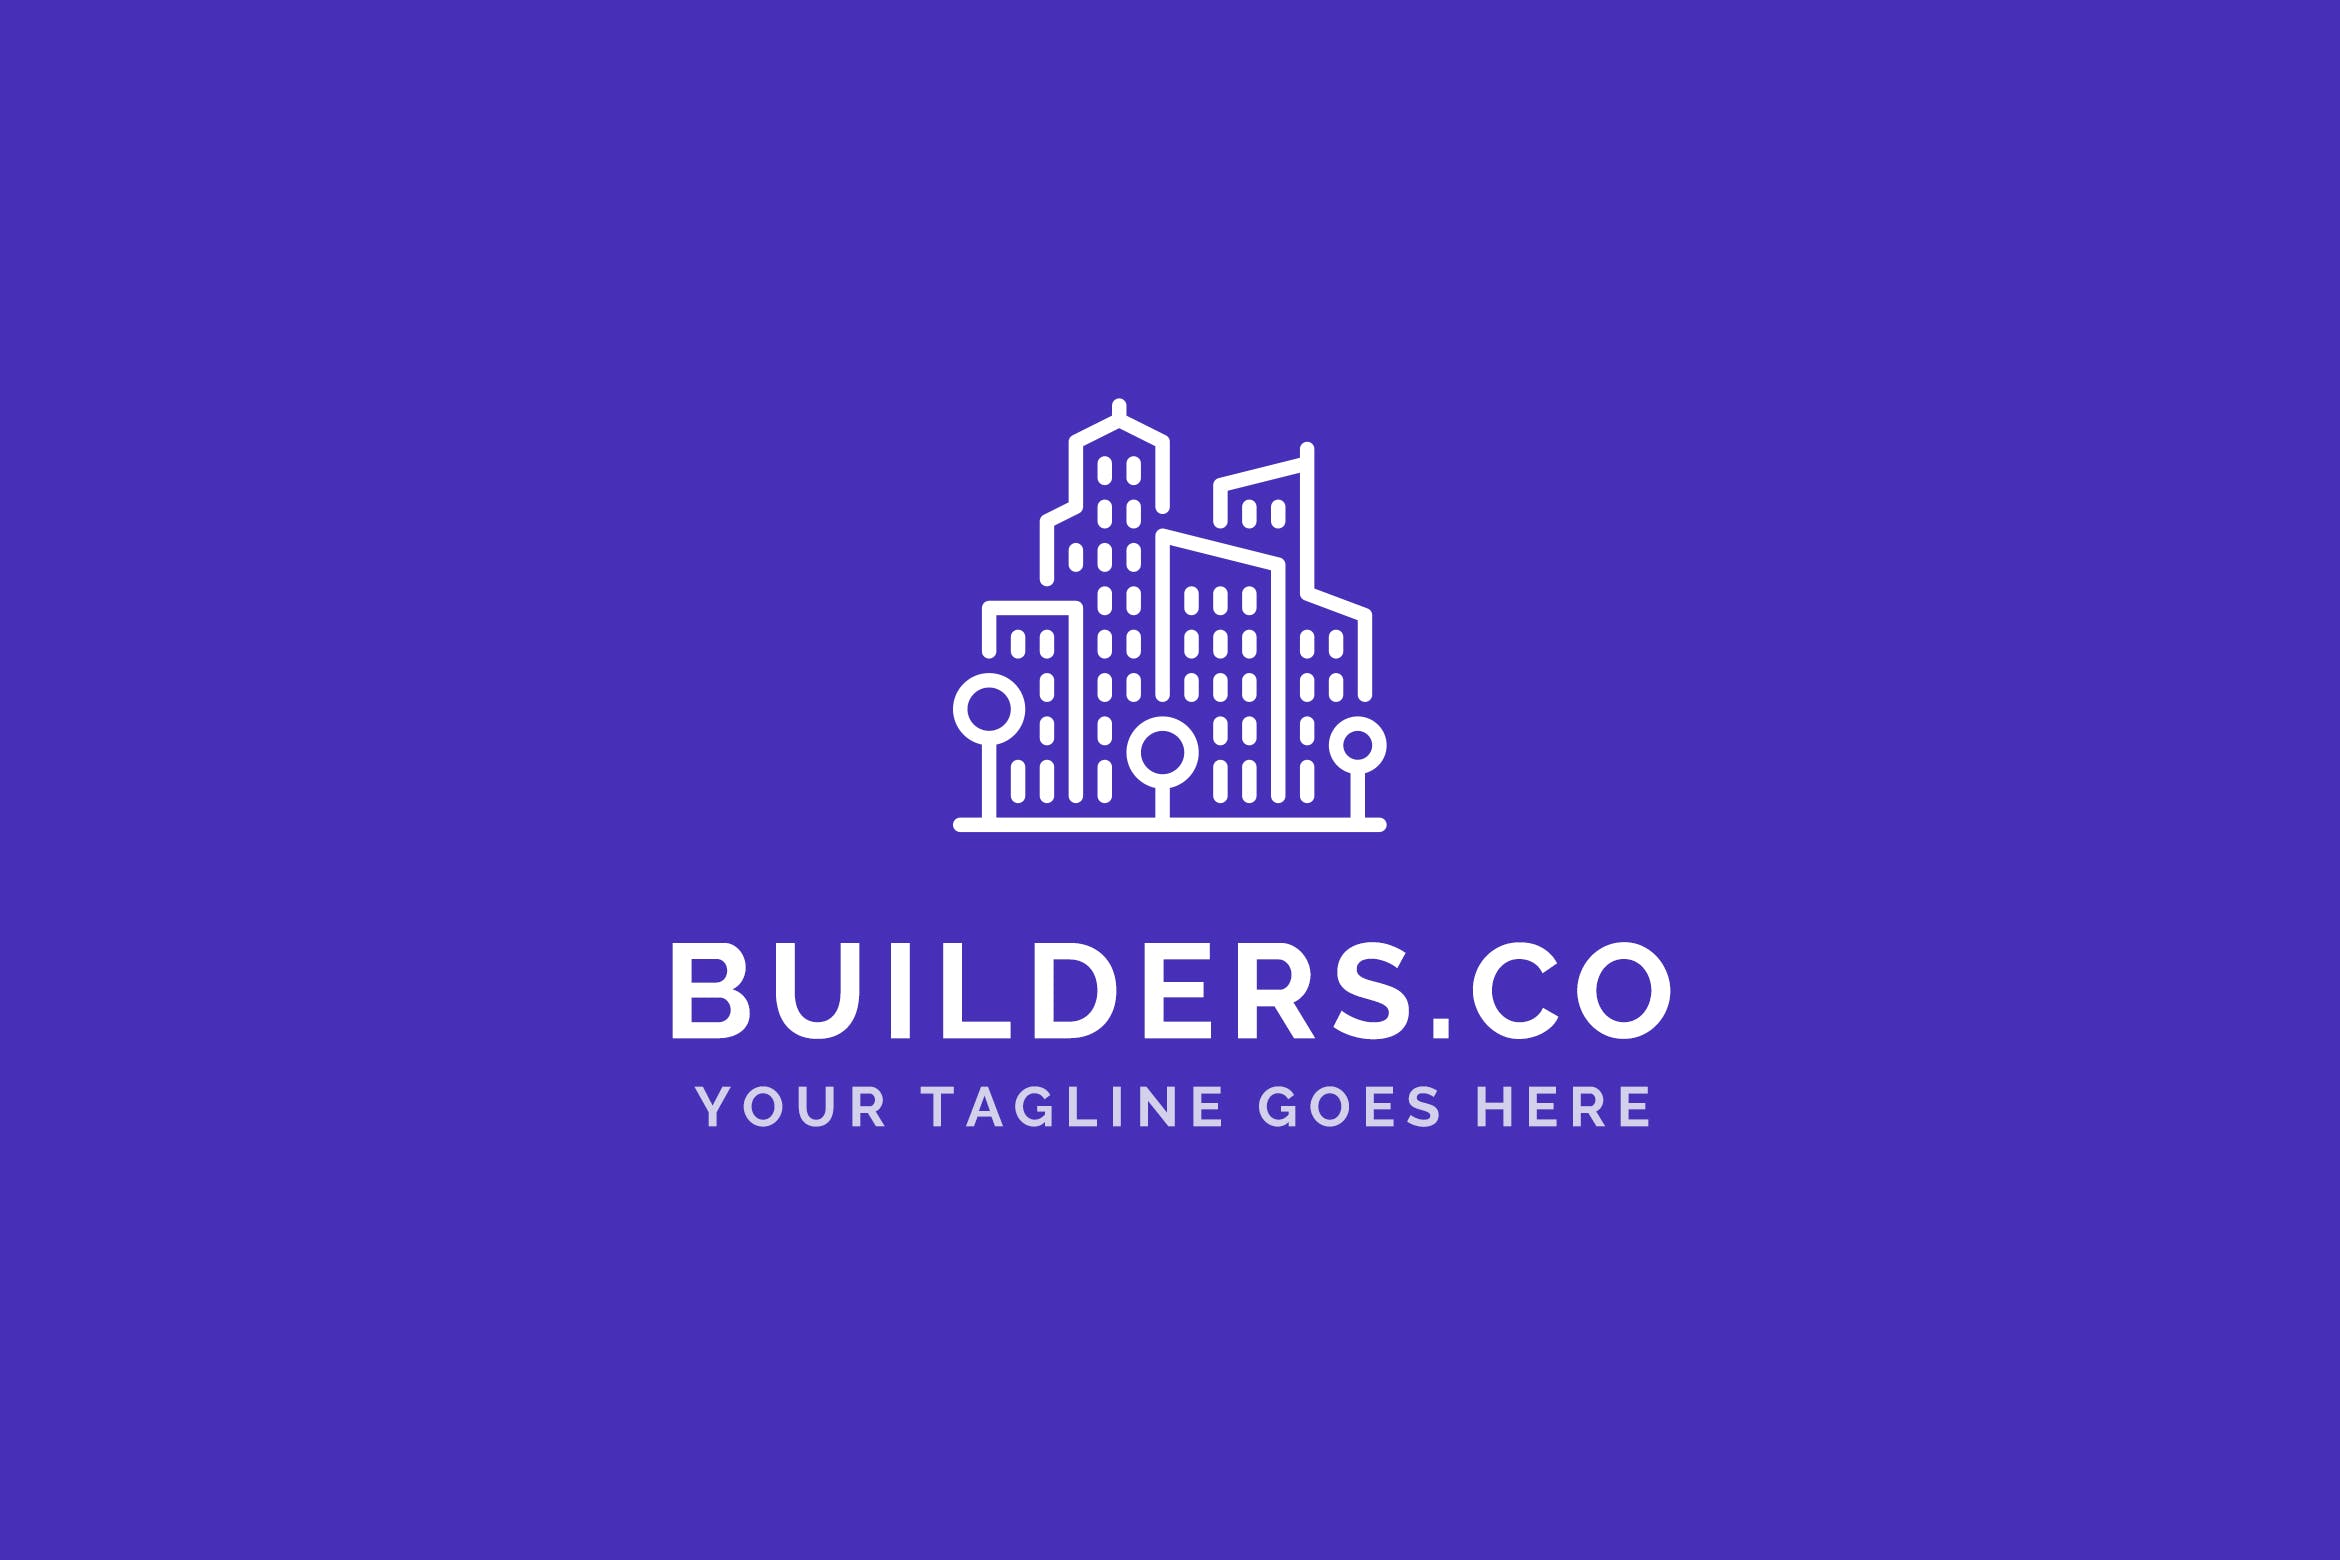 建筑基建/建筑设计策划公司Logo设计第一素材精选模板 Builders Co – Construction Company Logo Template插图